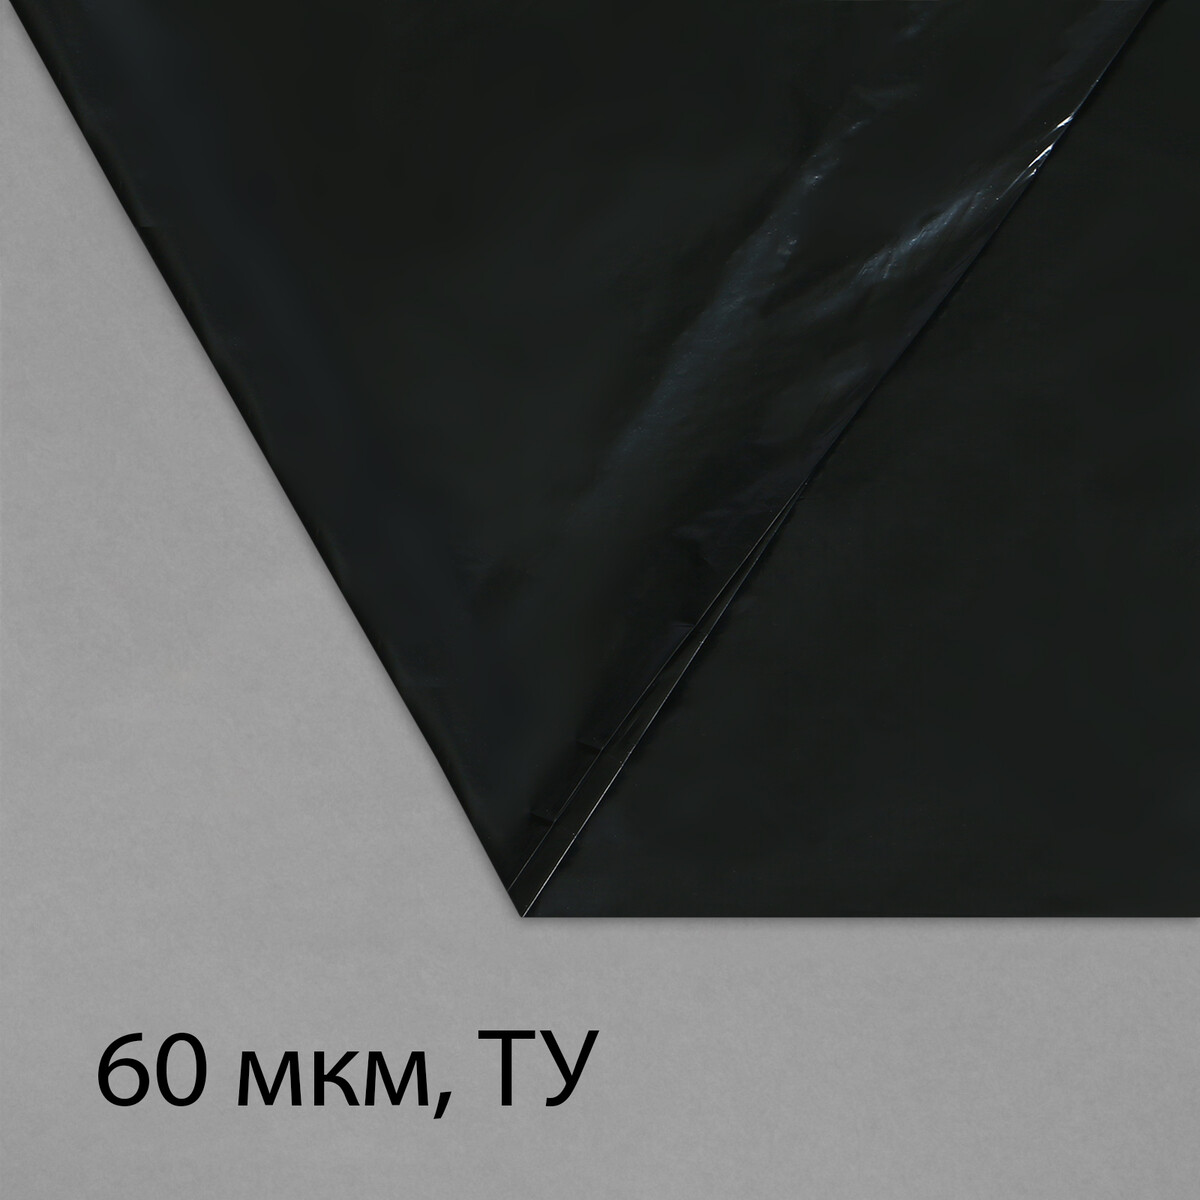 Пленка полиэтиленовая, техническая, толщина 60 мкм, 5 × 3 м, рукав (1,5 м × 2), черная, 2 сорт, эконом 50 % пленка полиэтиленовая толщина 200 мкм прозрачная 5 × 3 м рукав 1 5 × 2 м эконом 50%